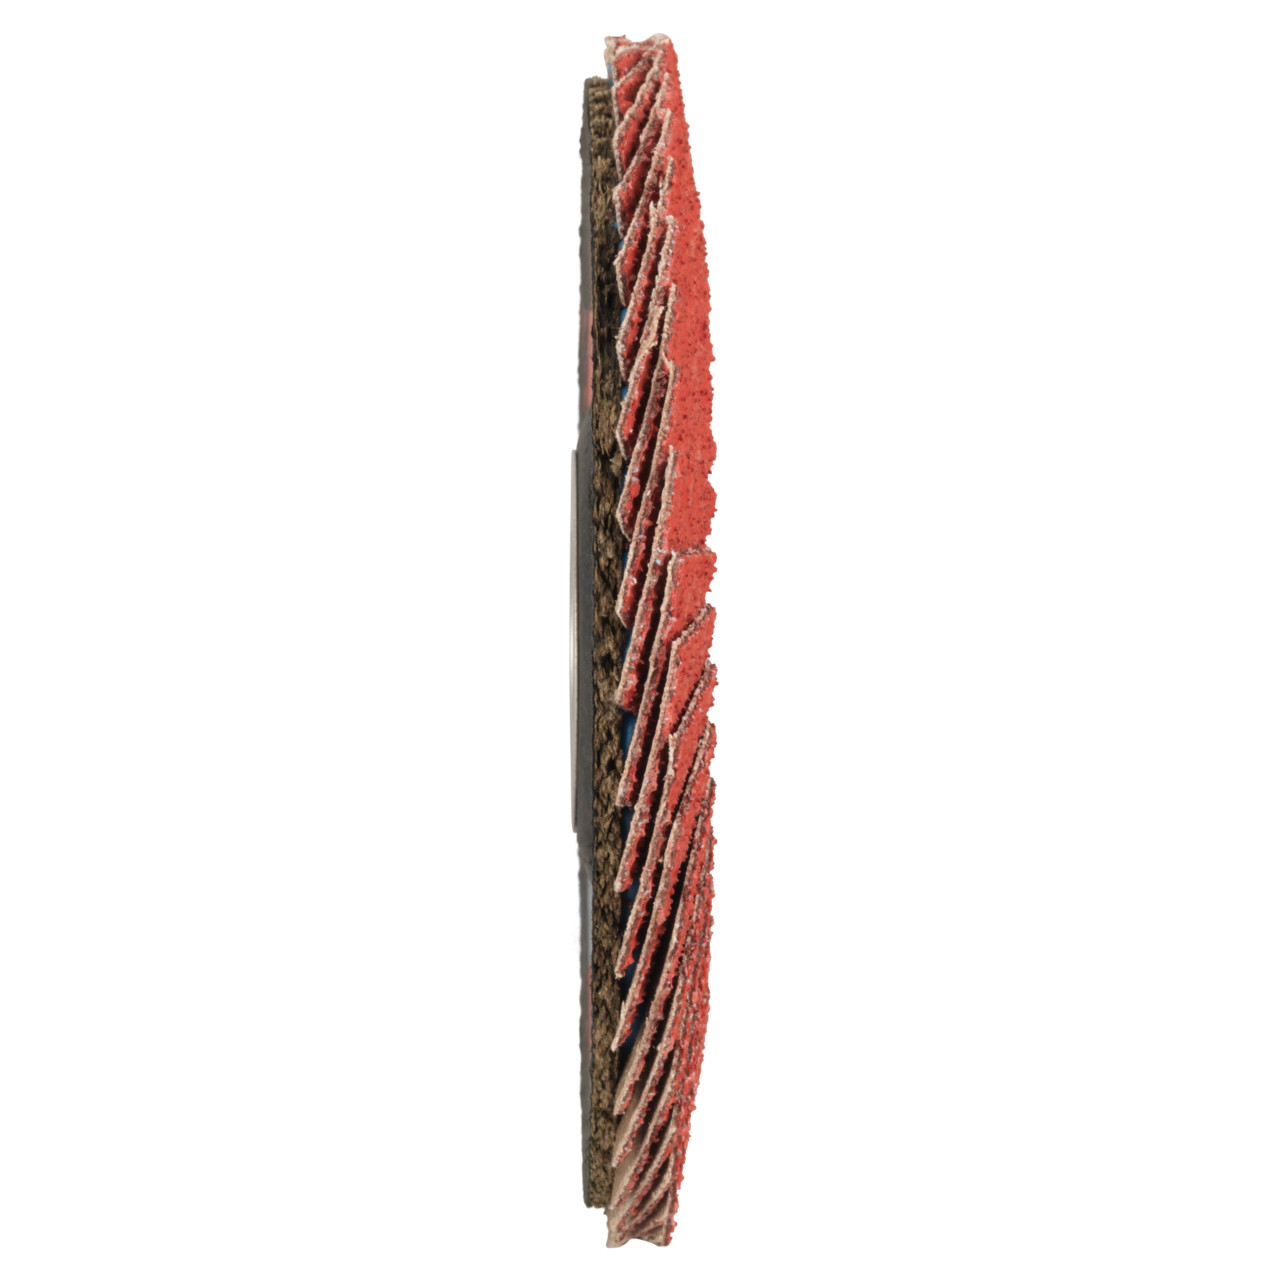 TYROLIT Fächerscheibe DxH 178x22,23 CERAMIC für Edelstahl, P40, Form: 28A - gerade Ausführung (Glasfaserträgerkörperausführung), Art. 34166859